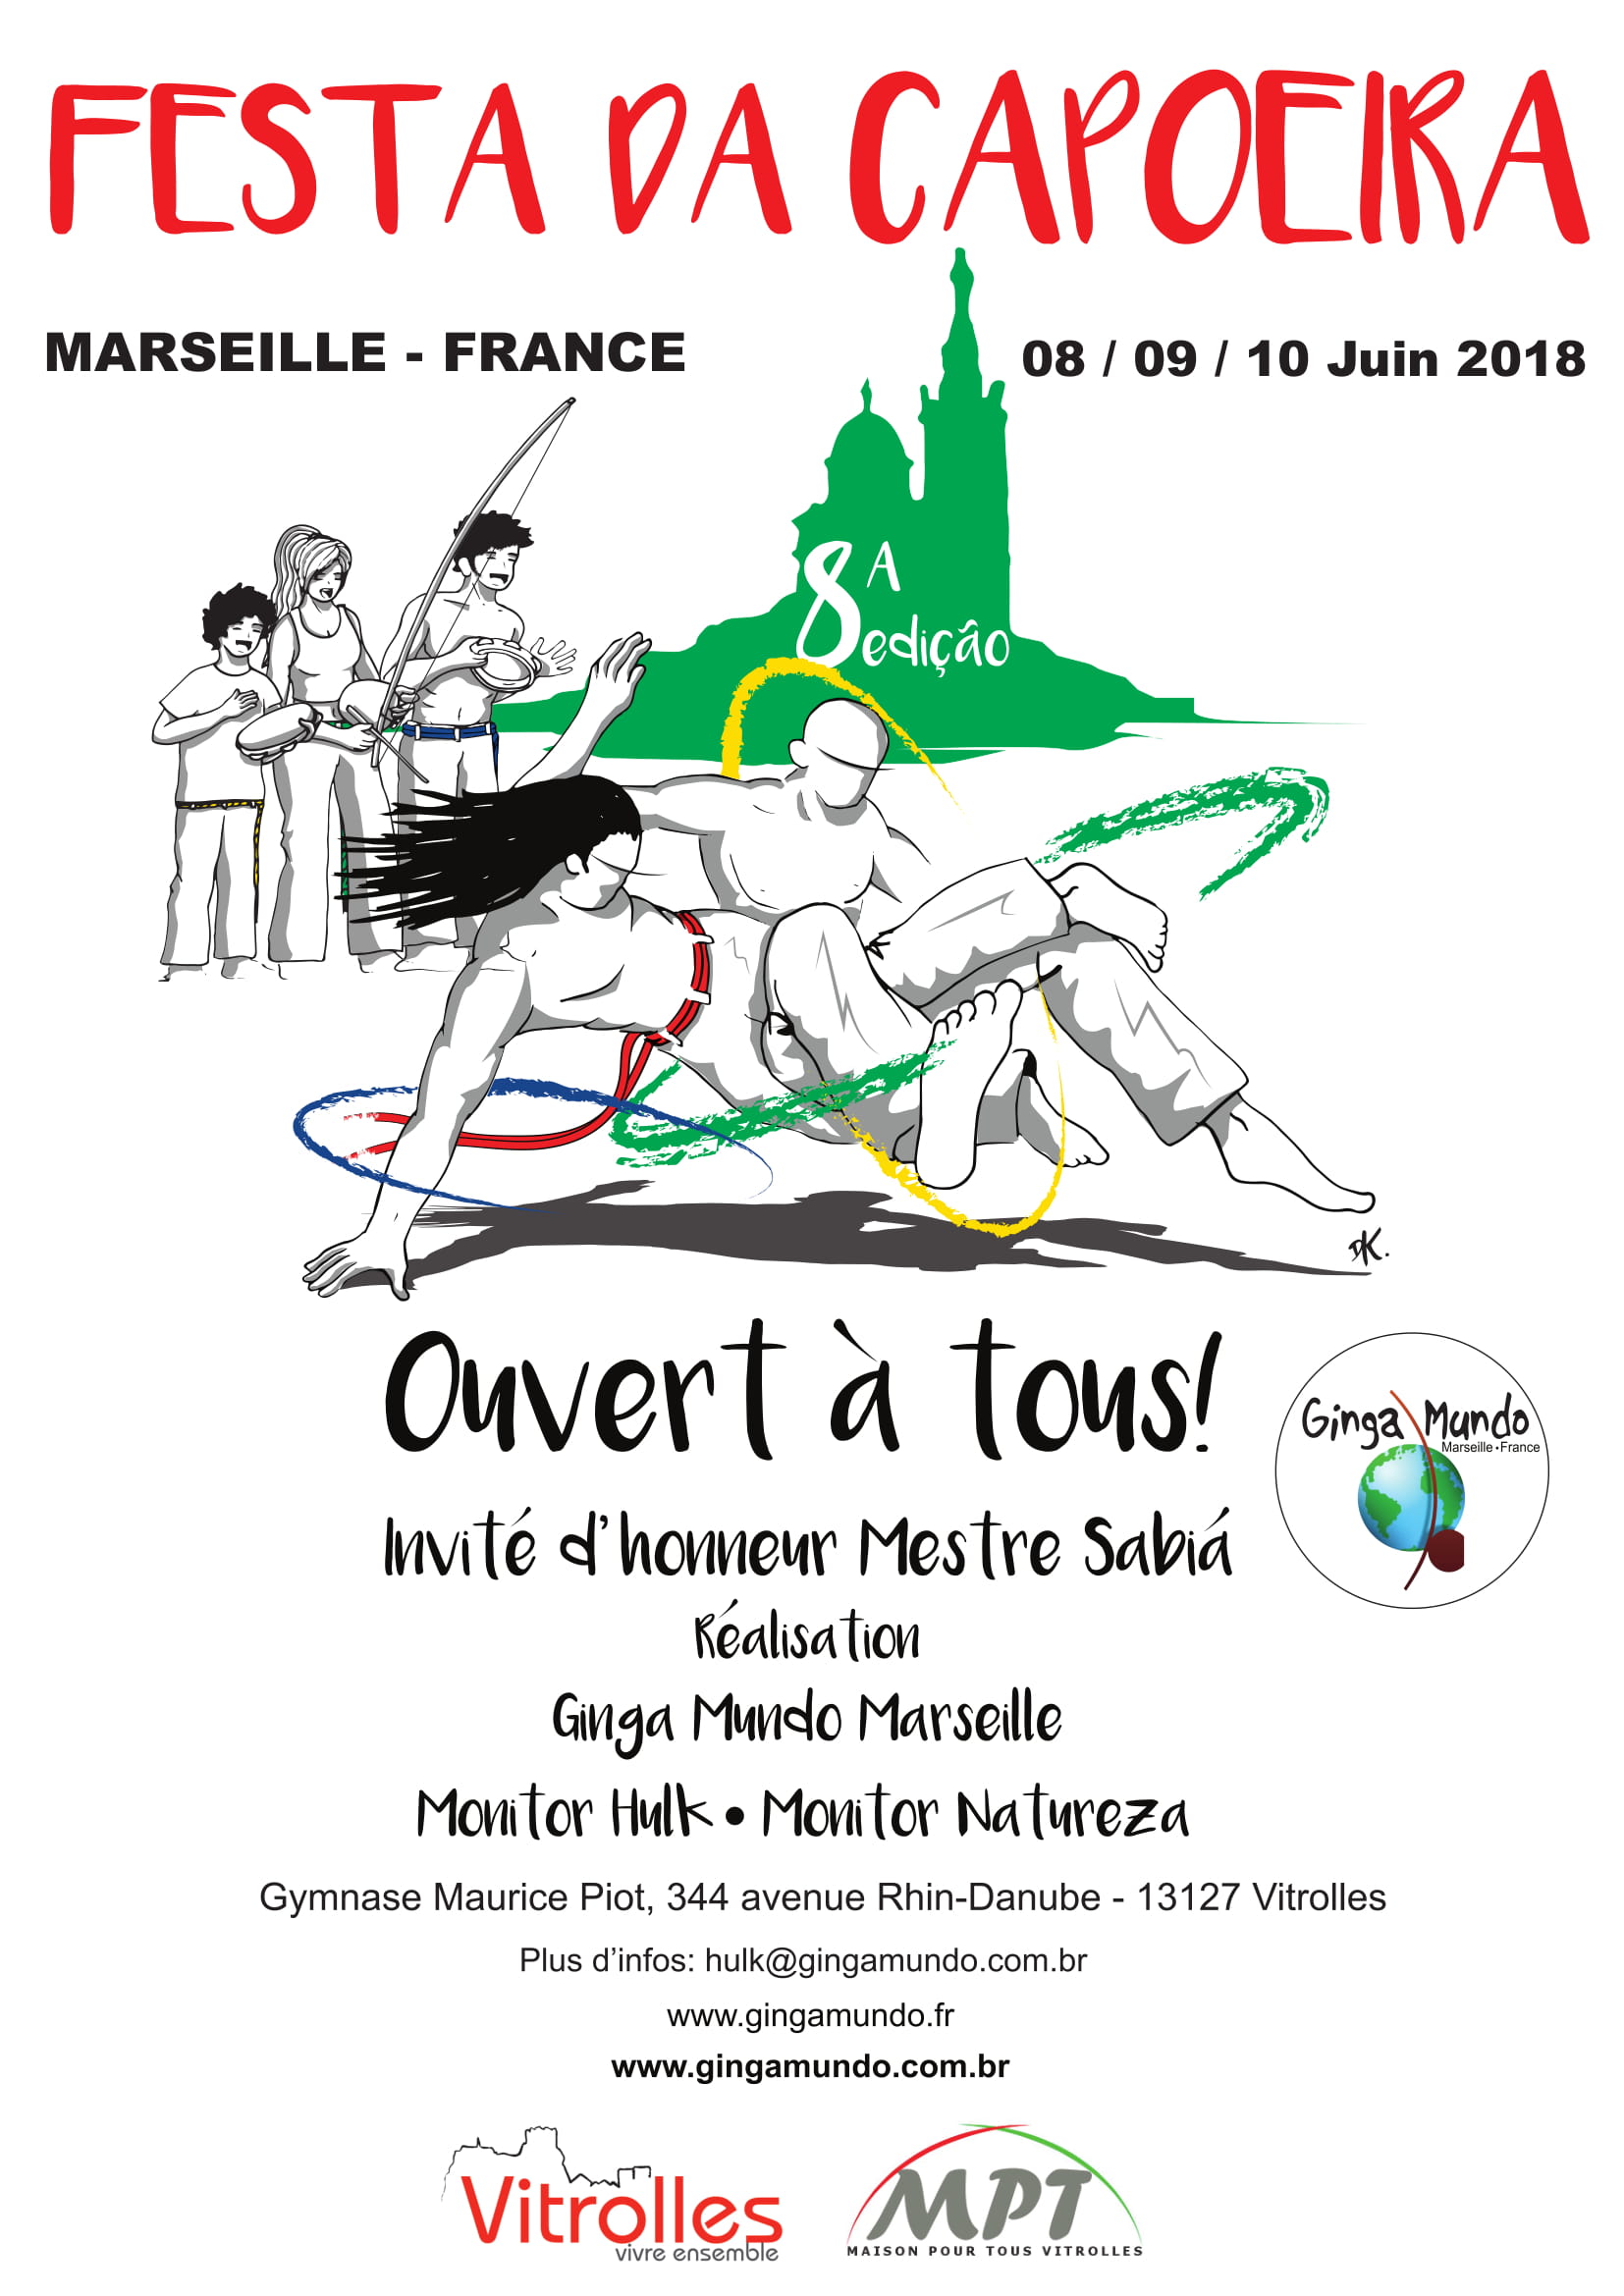 Festa da Capoeira - 2018 - Événement de Capoeira à Marseille